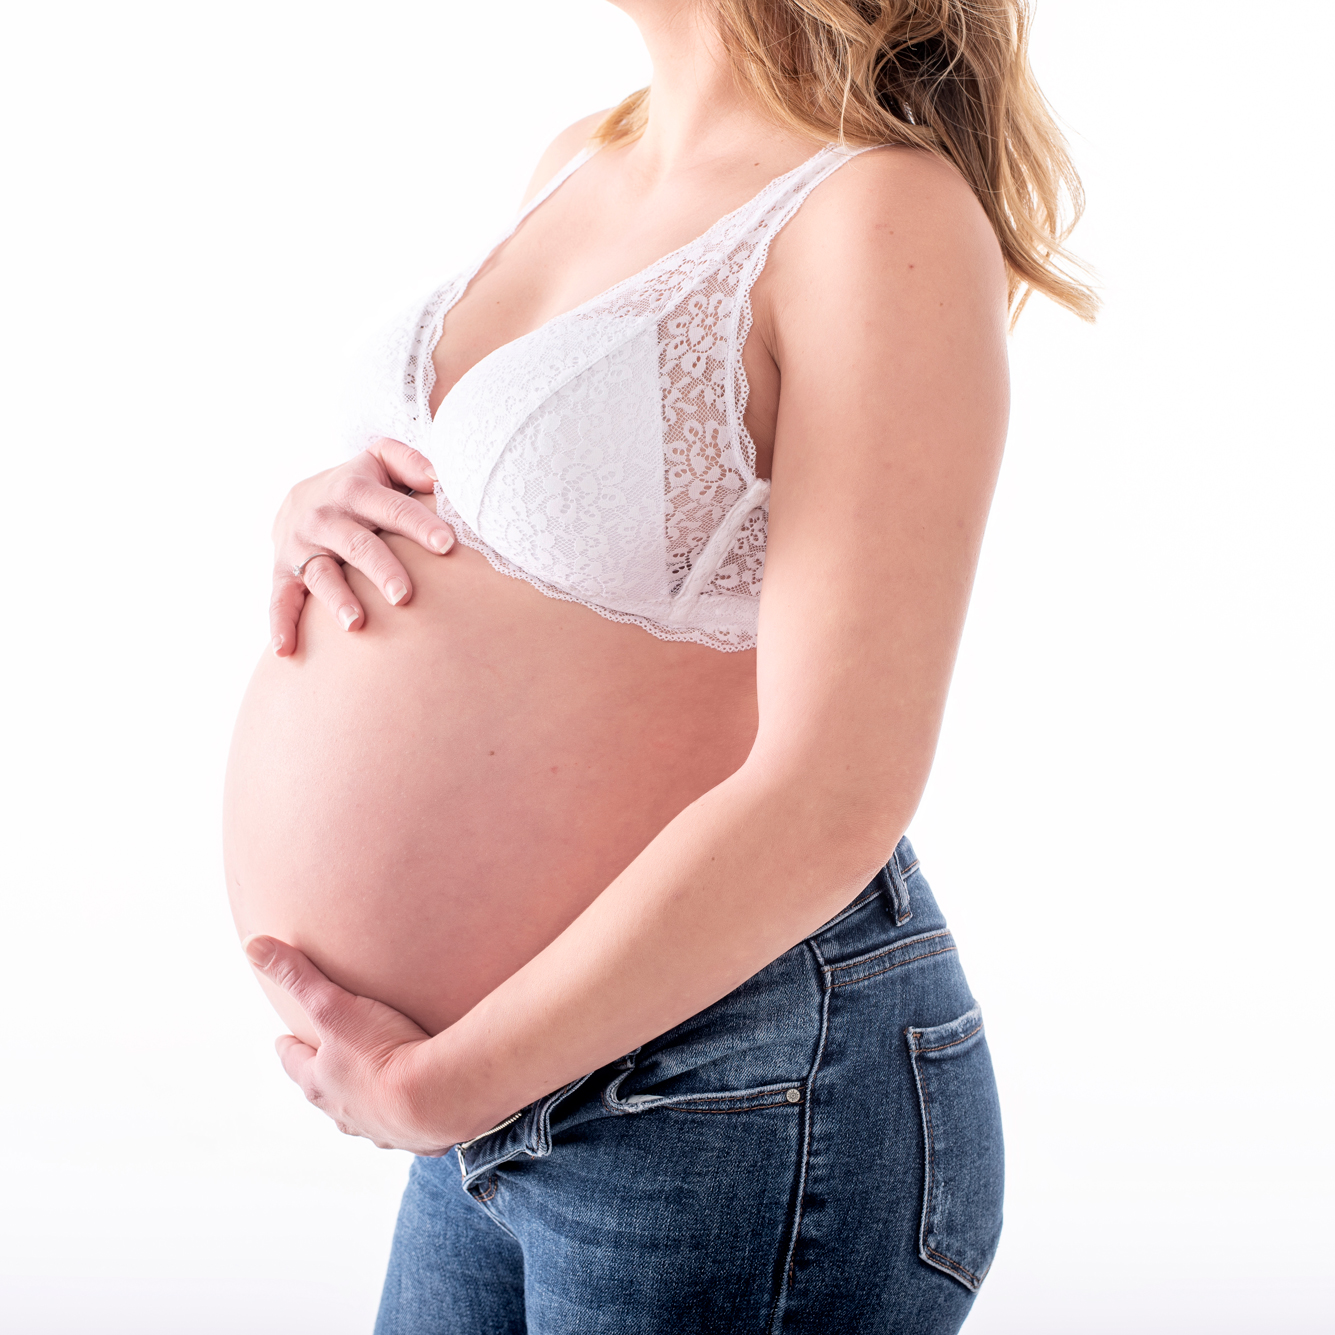 Las 40 semanas del embarazo